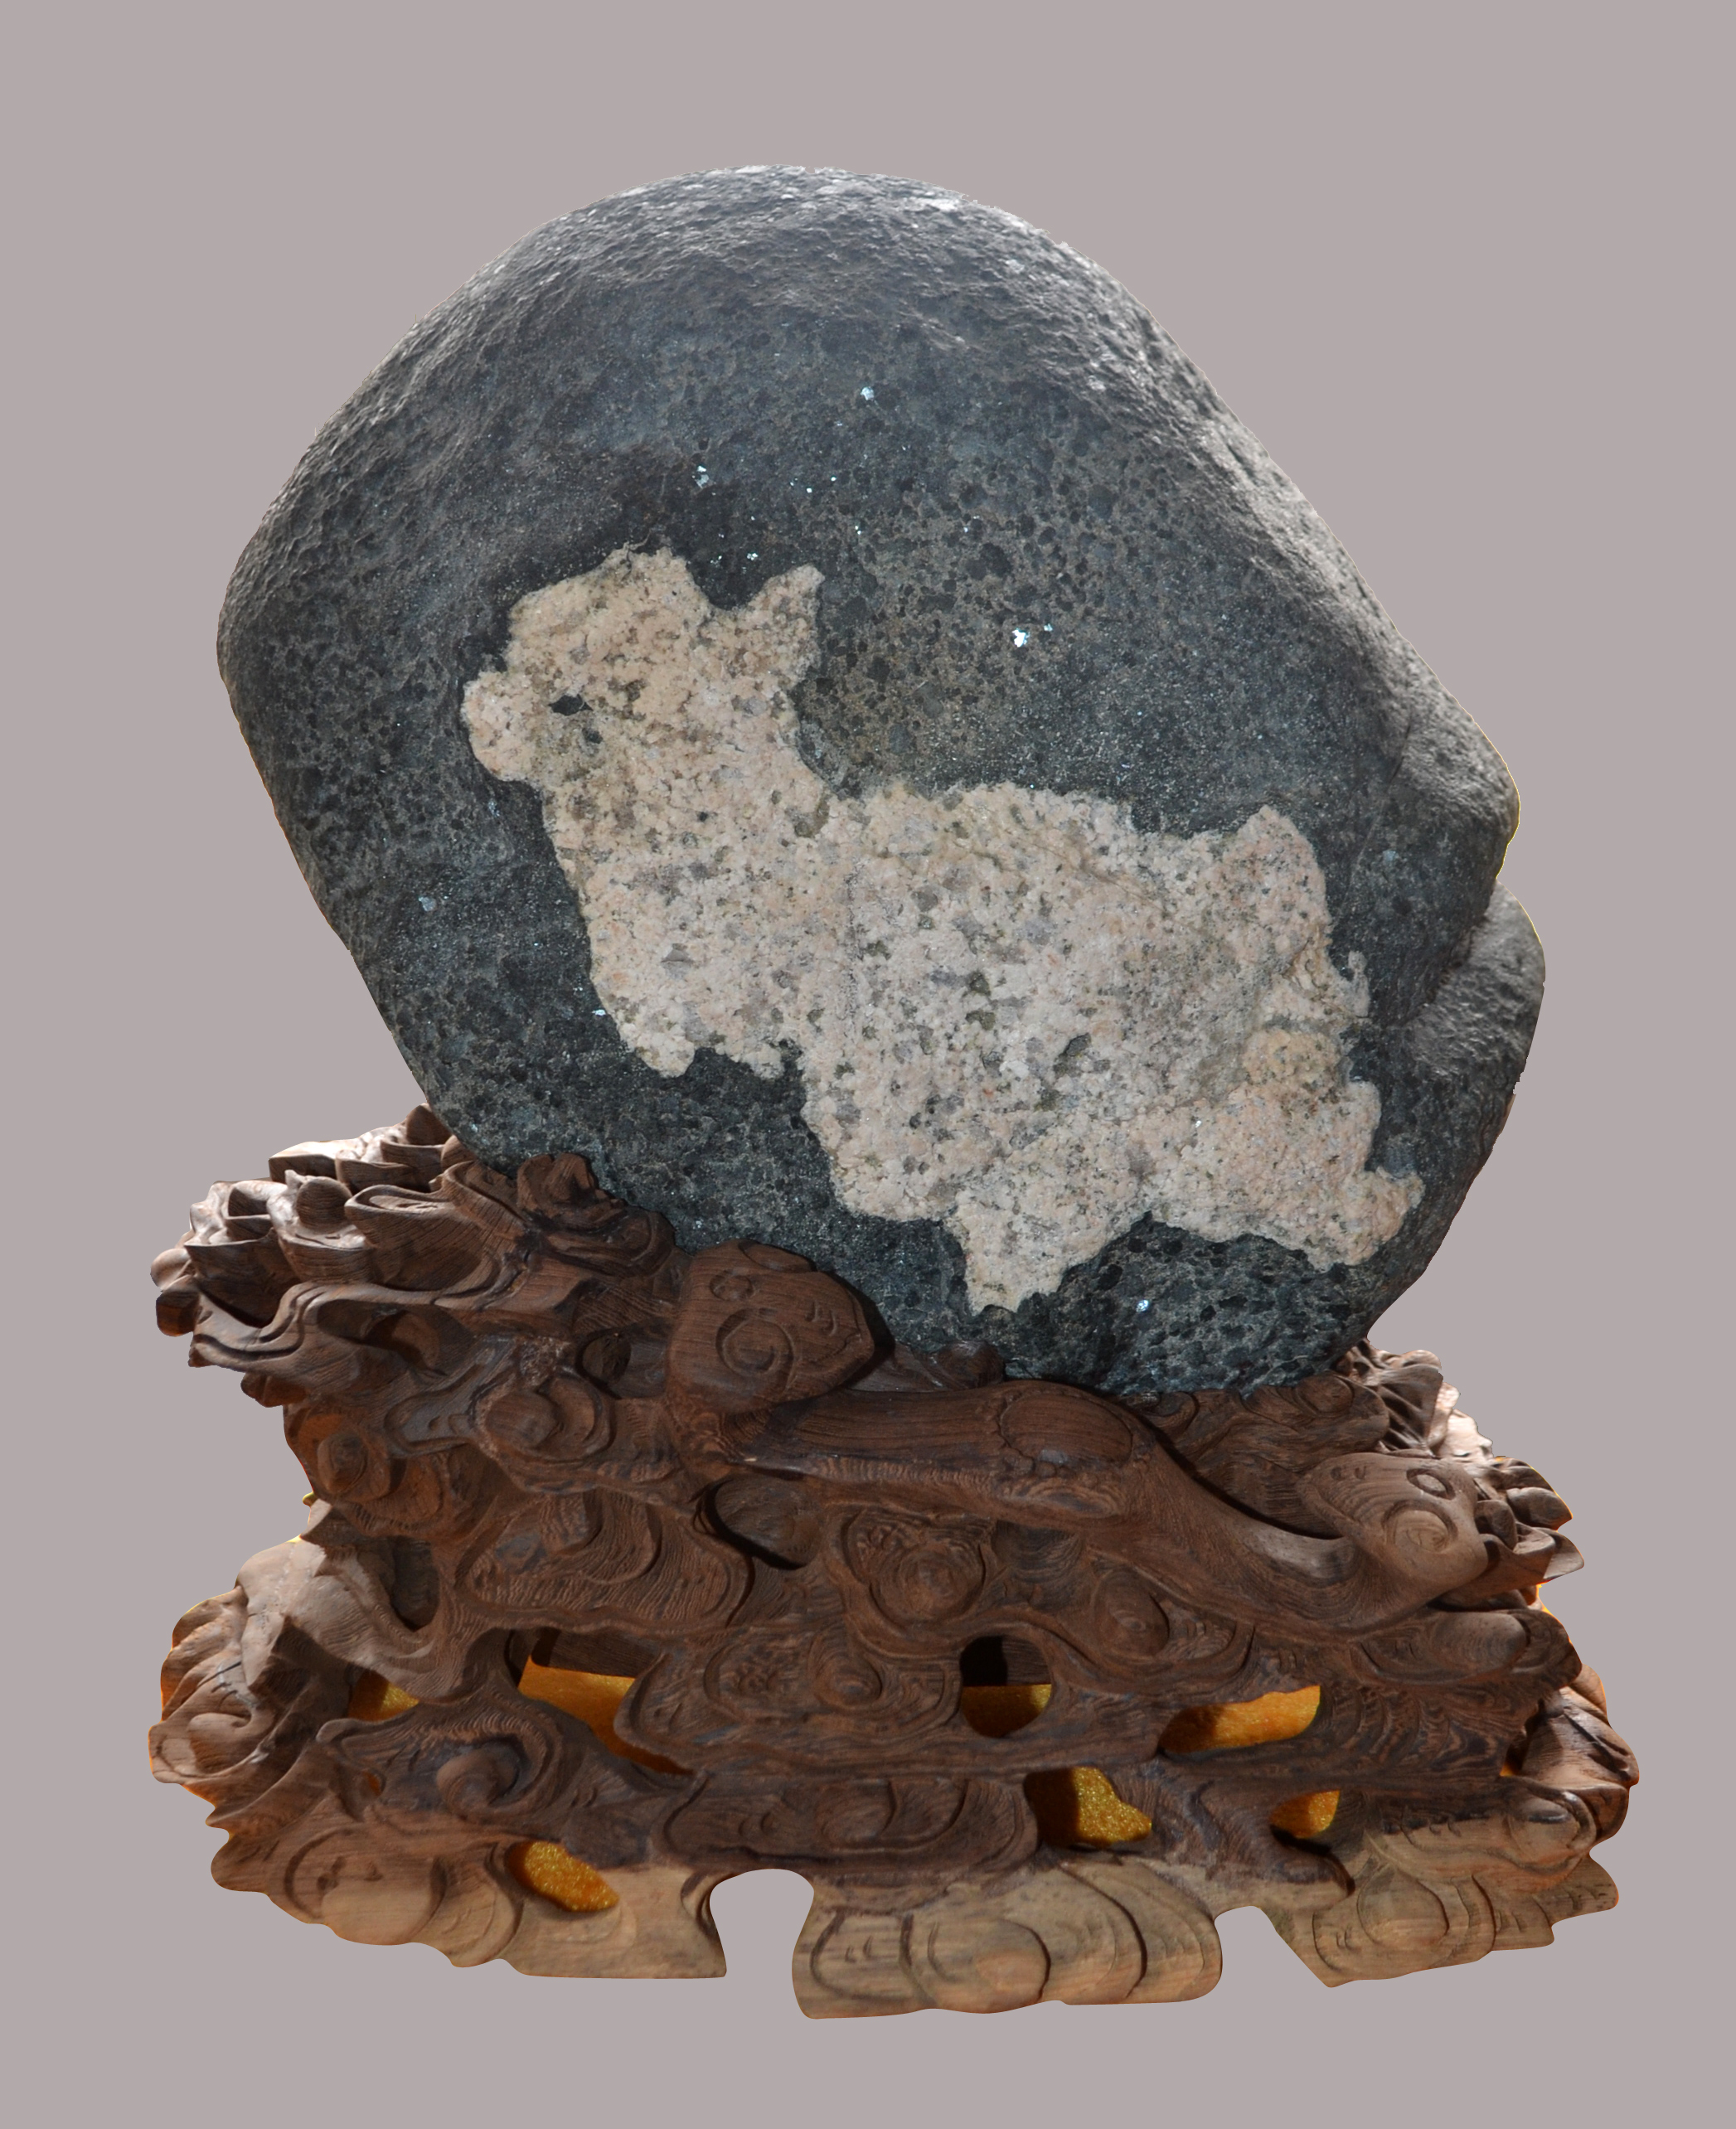 内蒙古阿拉善 大漠奇石文化博物馆内琳琅满目的奇石精品真亮眼__凤凰网